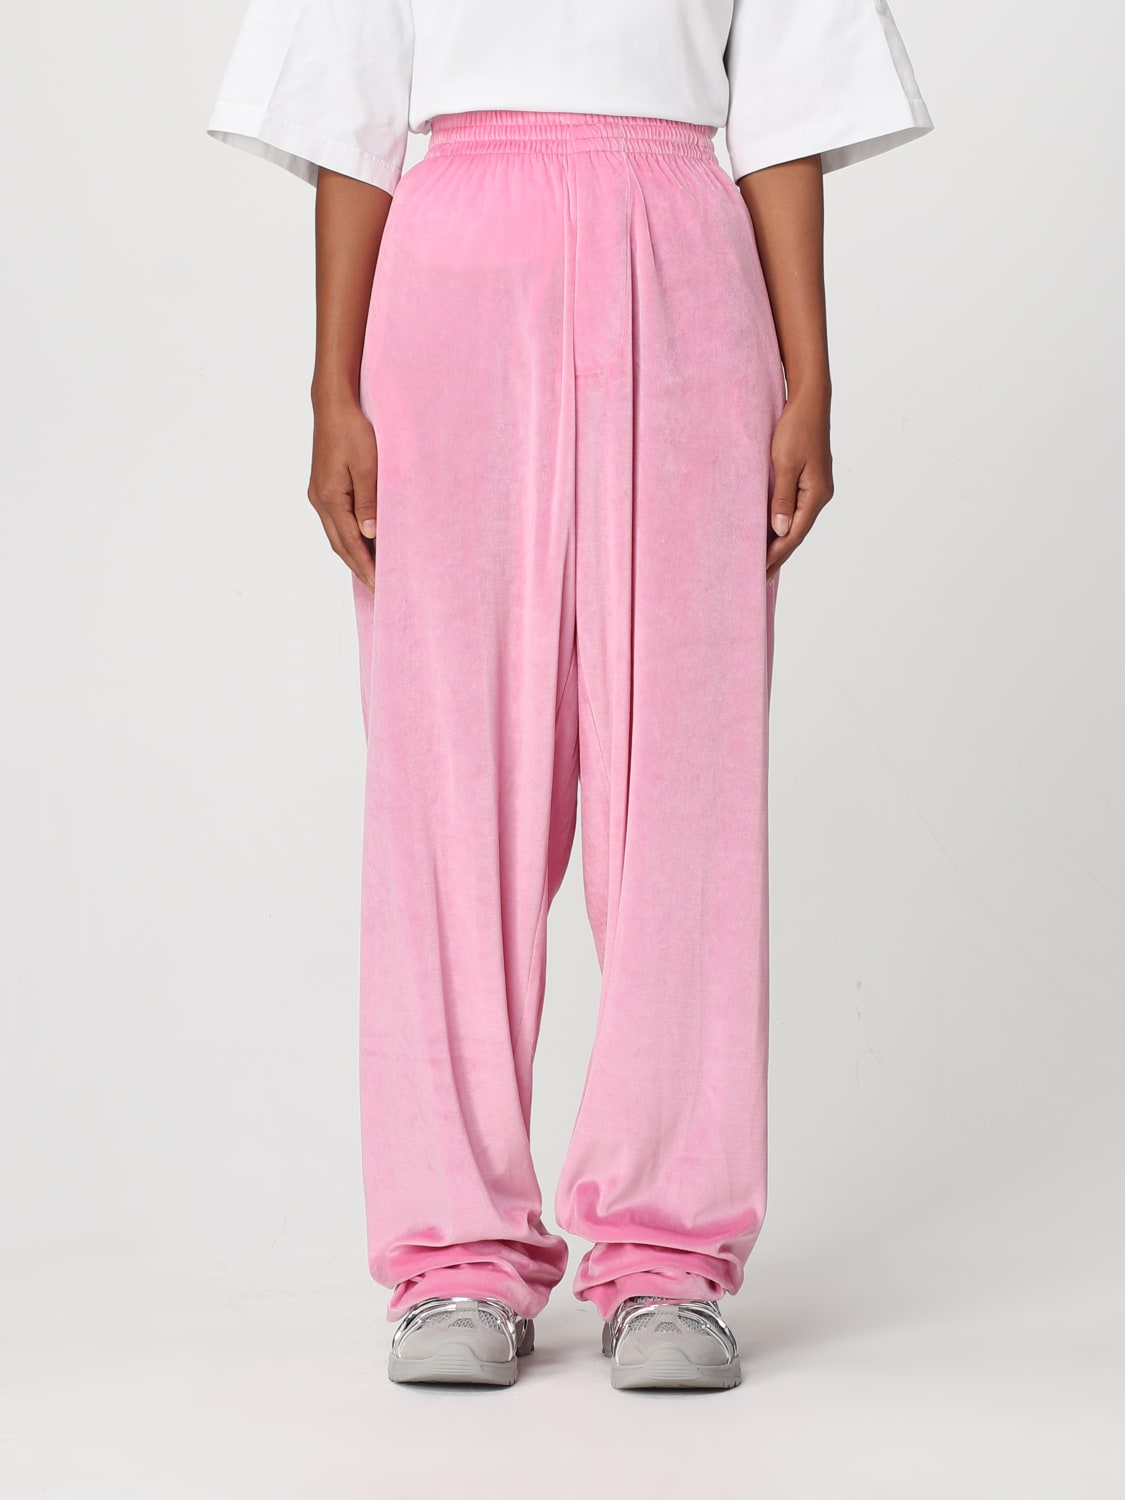 BALENCIAGA: velvet pants with elastic waist - Pink | Balenciaga ...